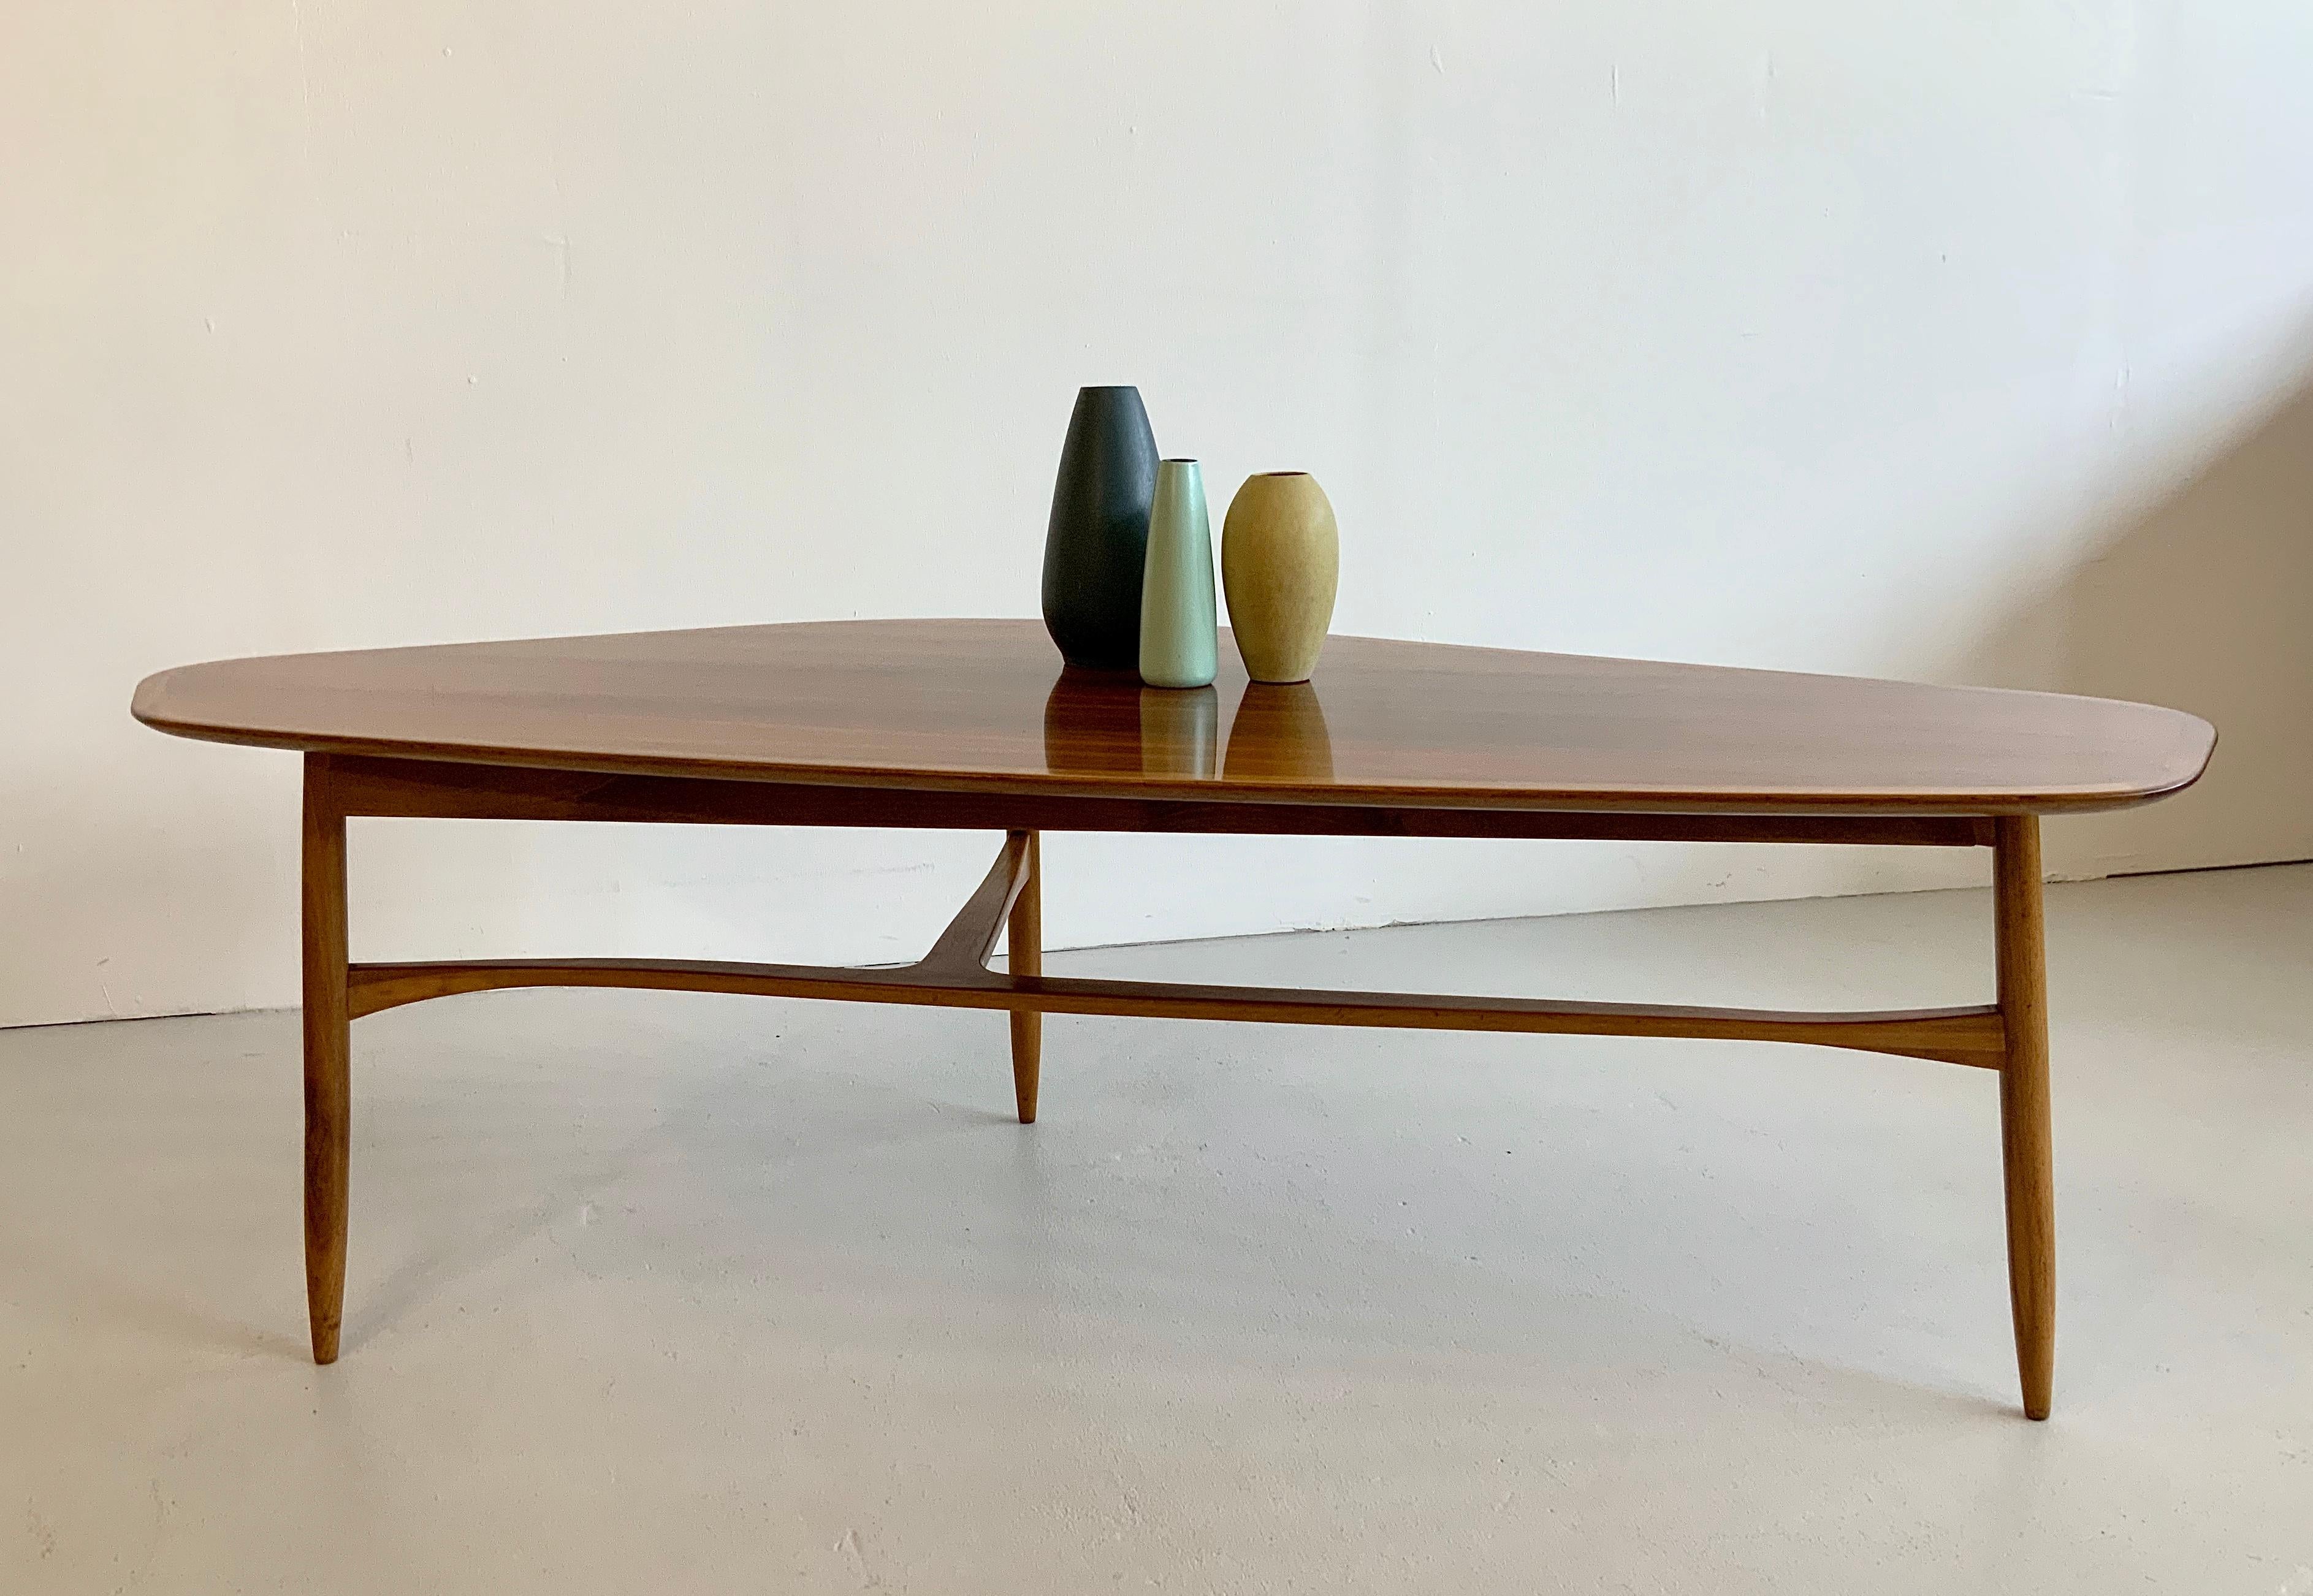 Dieser skandinavische Designklassiker der Jahrhundertmitte wurde in den 1950er Jahren von Svante Skogh für Laauser in Schweden entworfen.
Dieser Tisch ist von höchster Qualität, ein begehrtes Sammlerobjekt und sehr repräsentativ.

Der Charakter